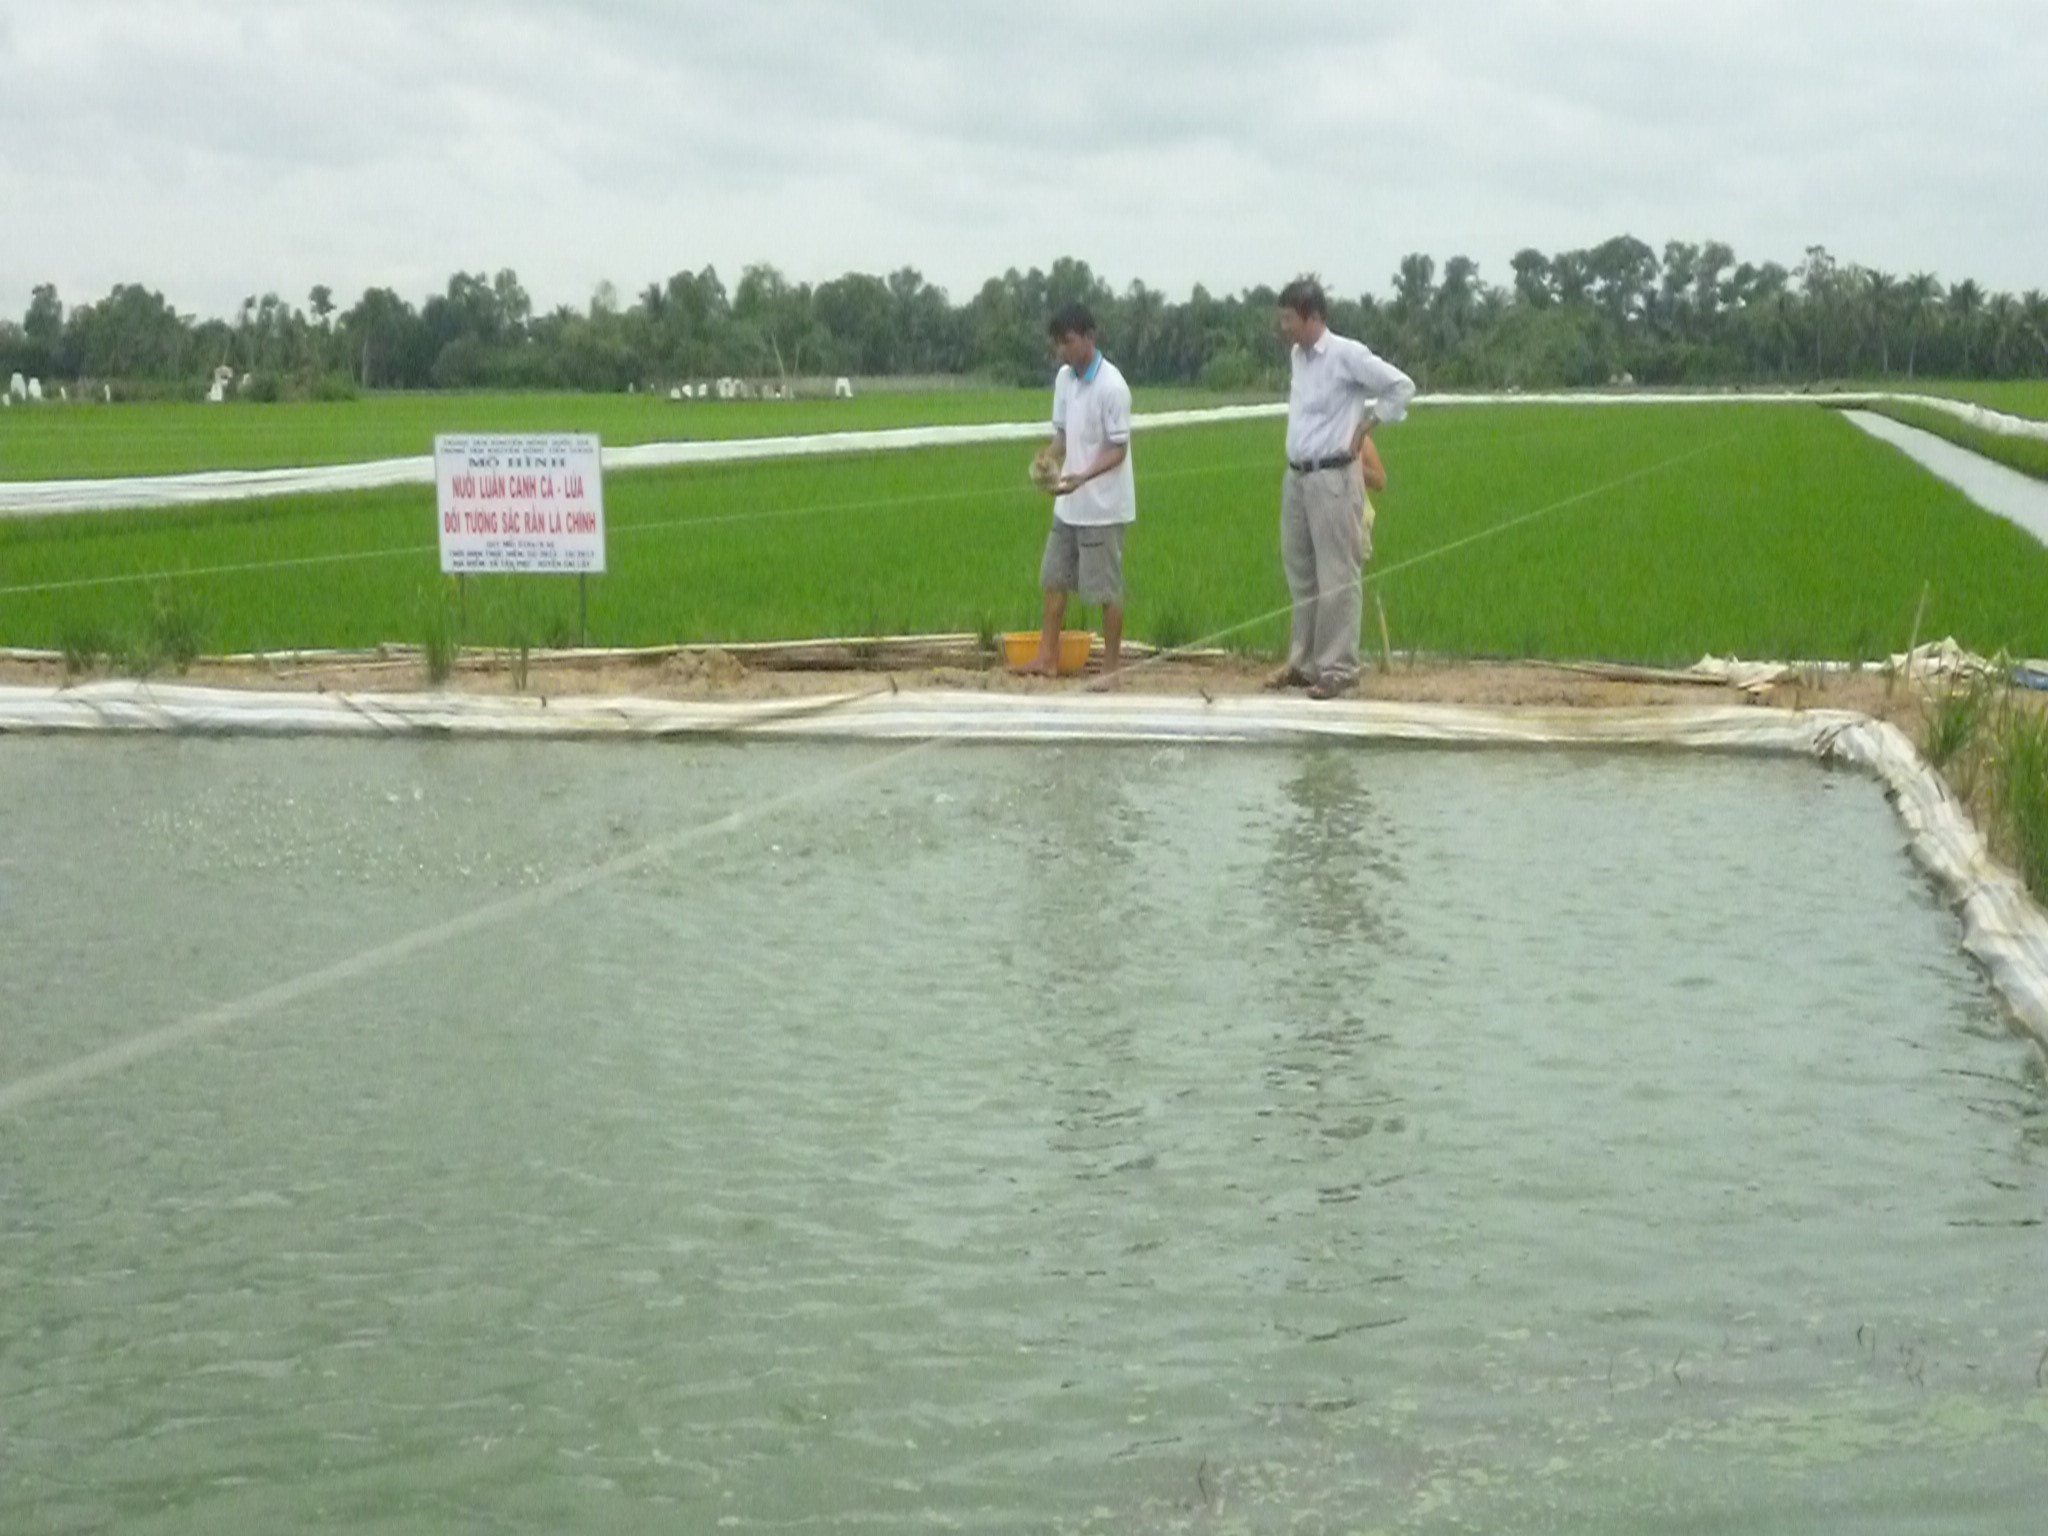 Phát triển tôm  lúa vì kinh tế xanh bền vững  Tạp chí Thủy sản Việt Nam